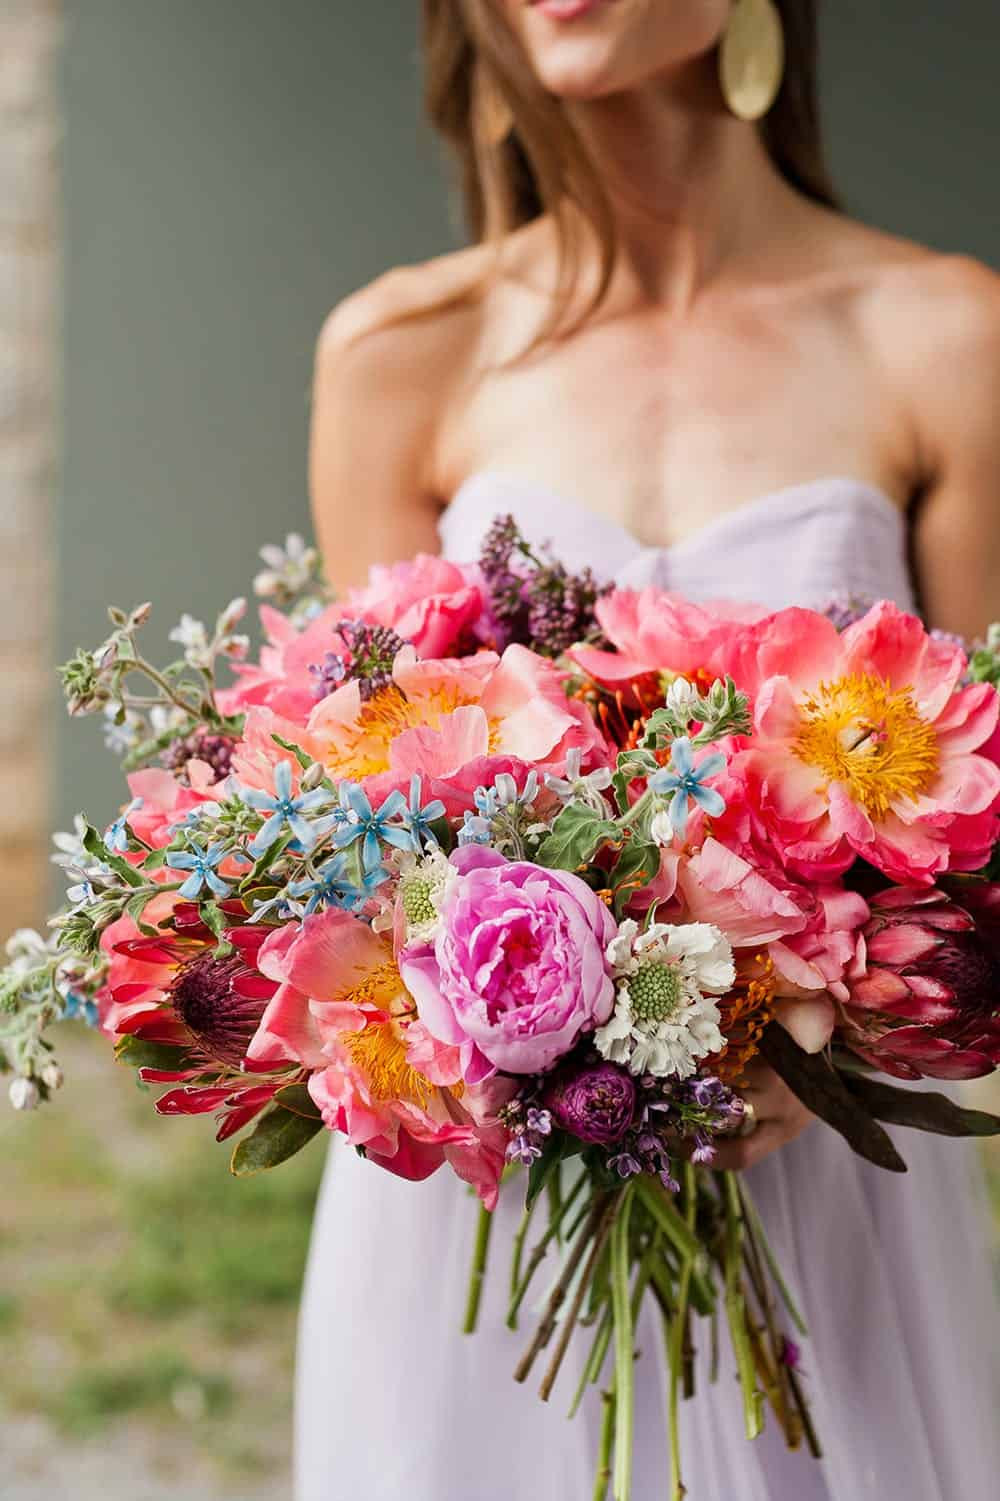 DIY Wedding Flower Arrangements
 15 Wedding Bouquets You Can DIY Yourself